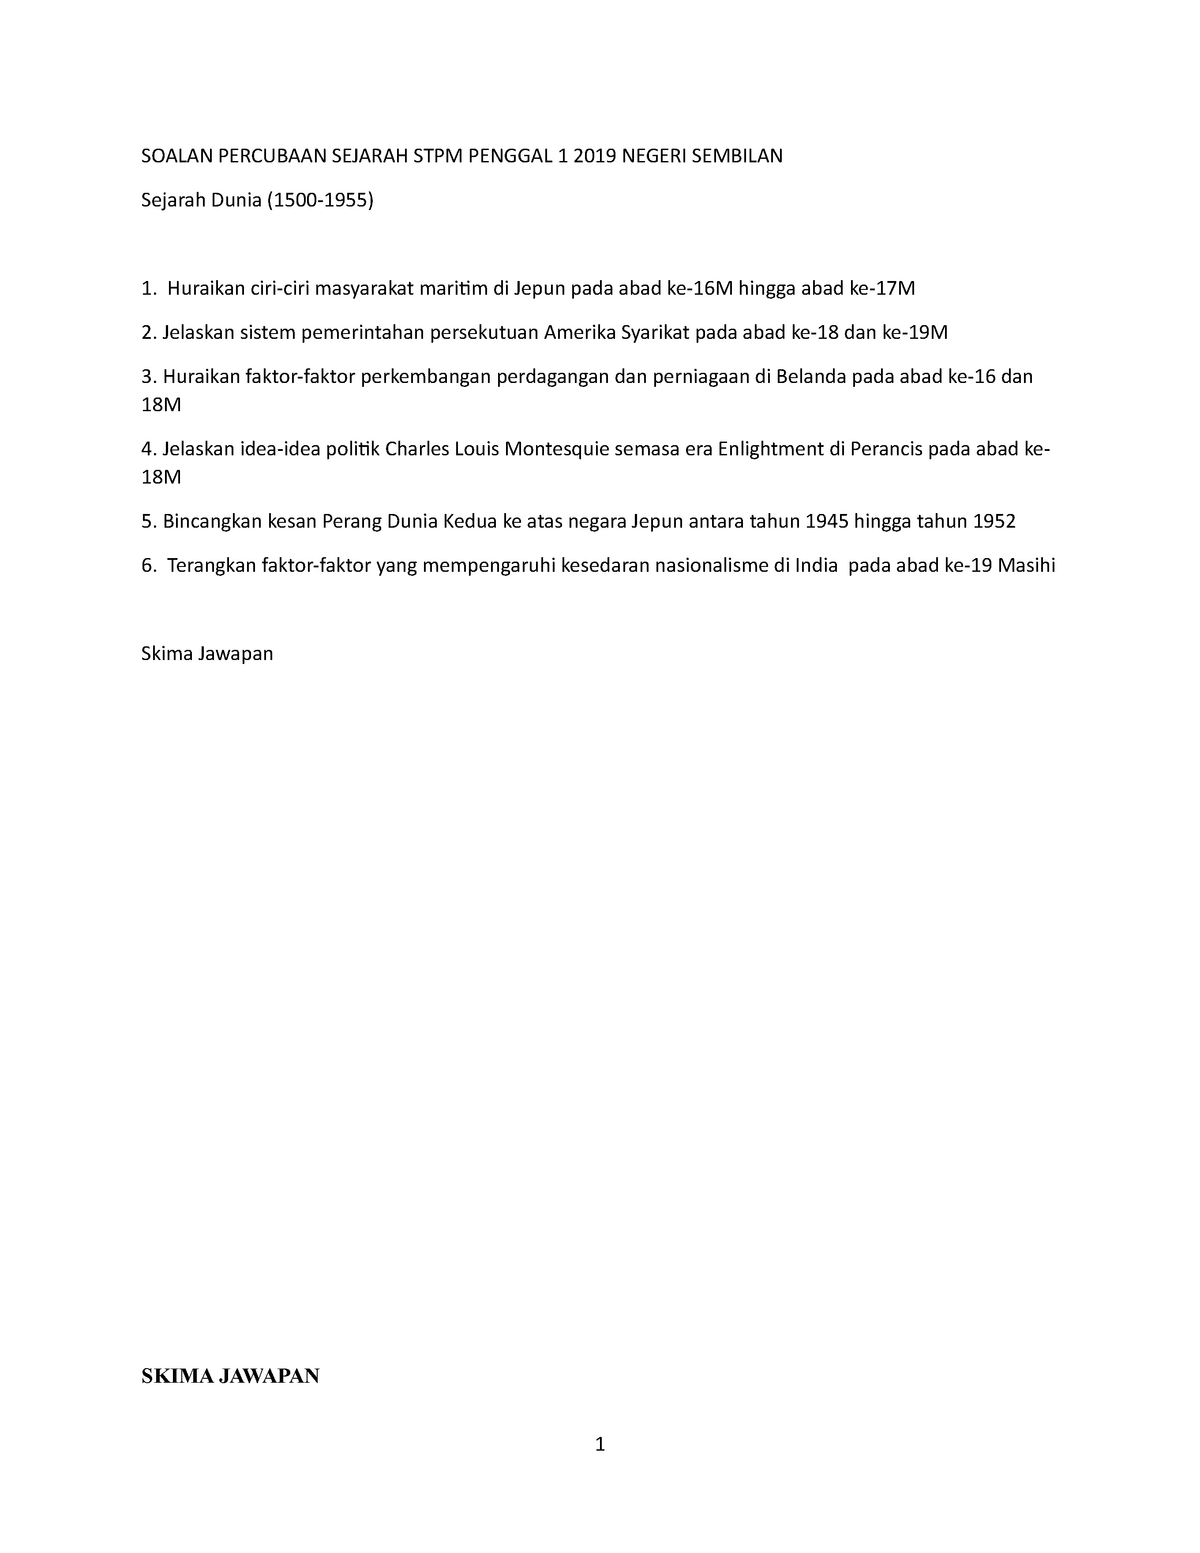 Latihan Latihan Sejarah Stpm Soalan Percubaan Sejarah Stpm Penggal 1 2019 Negeri Sembilan Sejarah Studocu